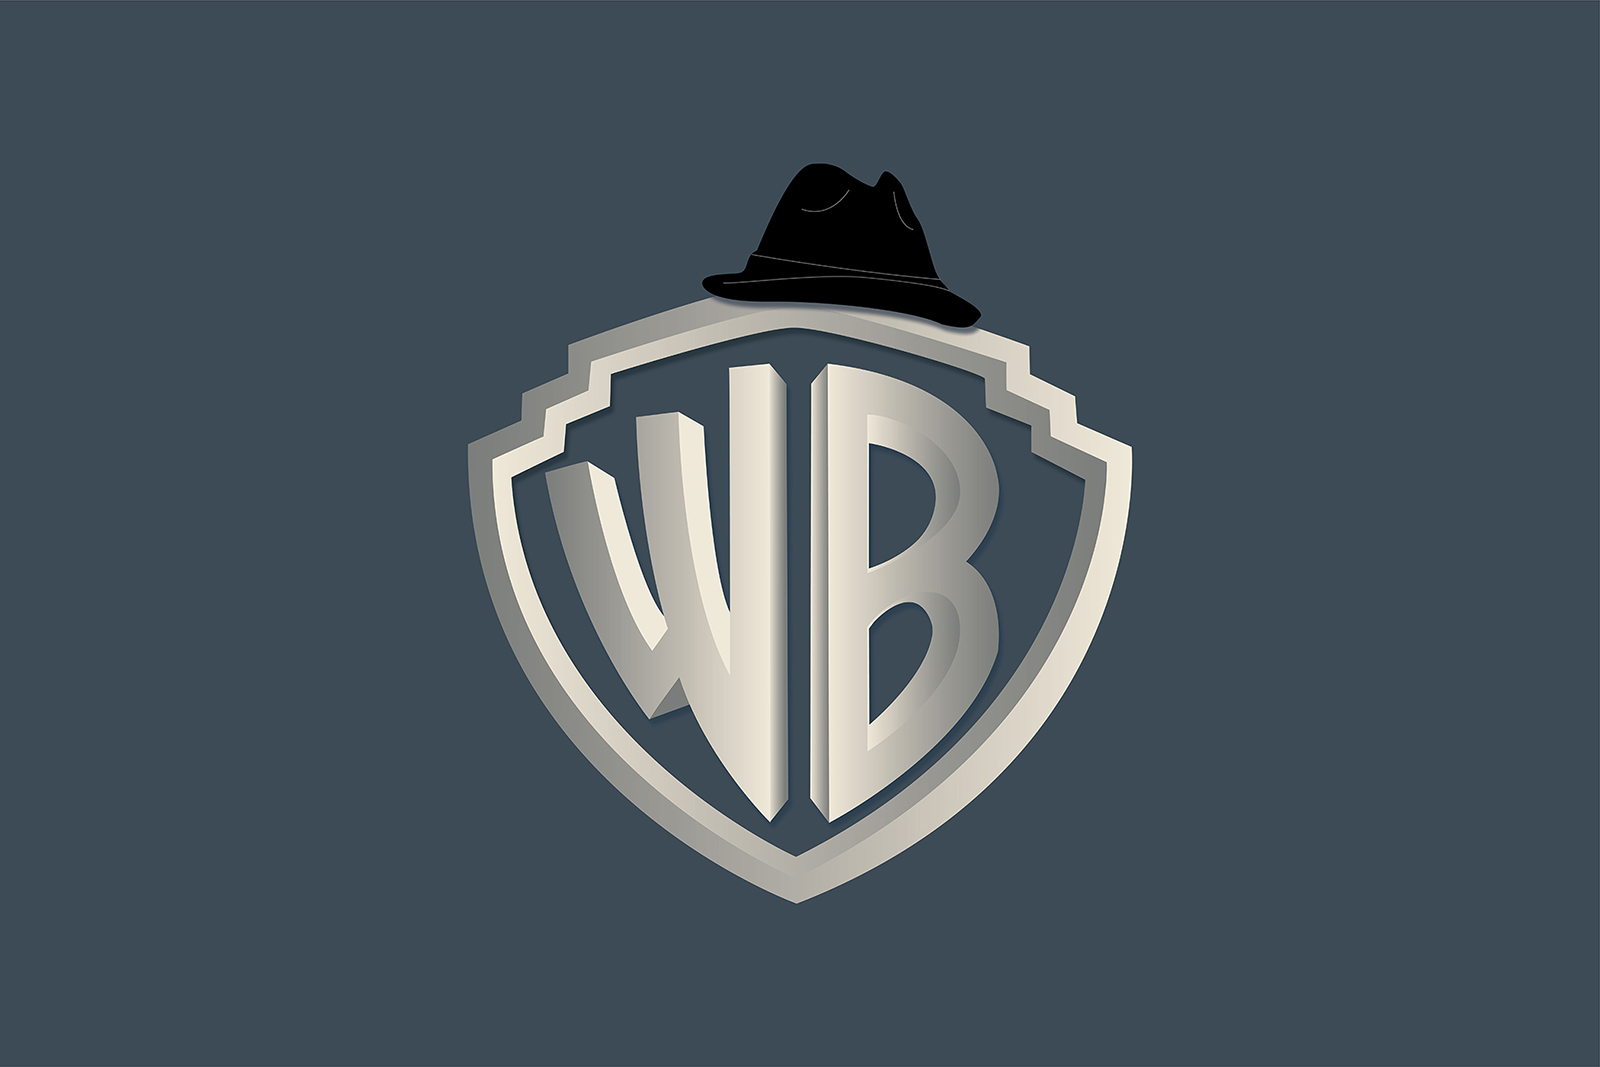 DiseÃ±o del escudo WB con el sombrero de Rocky sobre Ã©l.